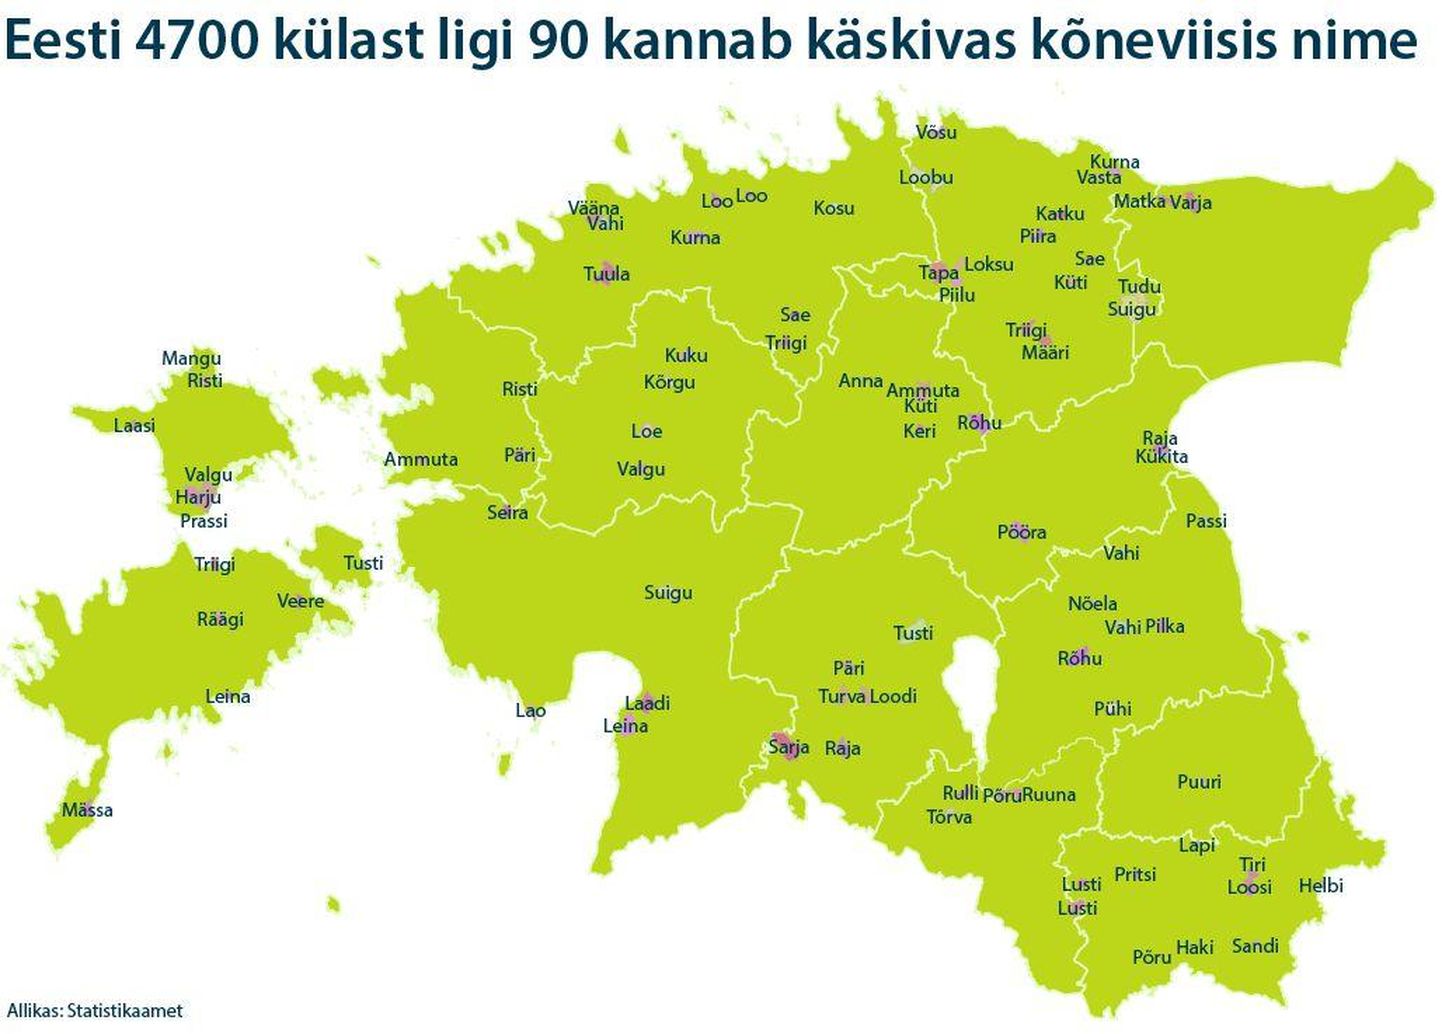 Käskivas kõneviisis on Eestis kokku 90 küla, neist kuus on Viljandimaal.